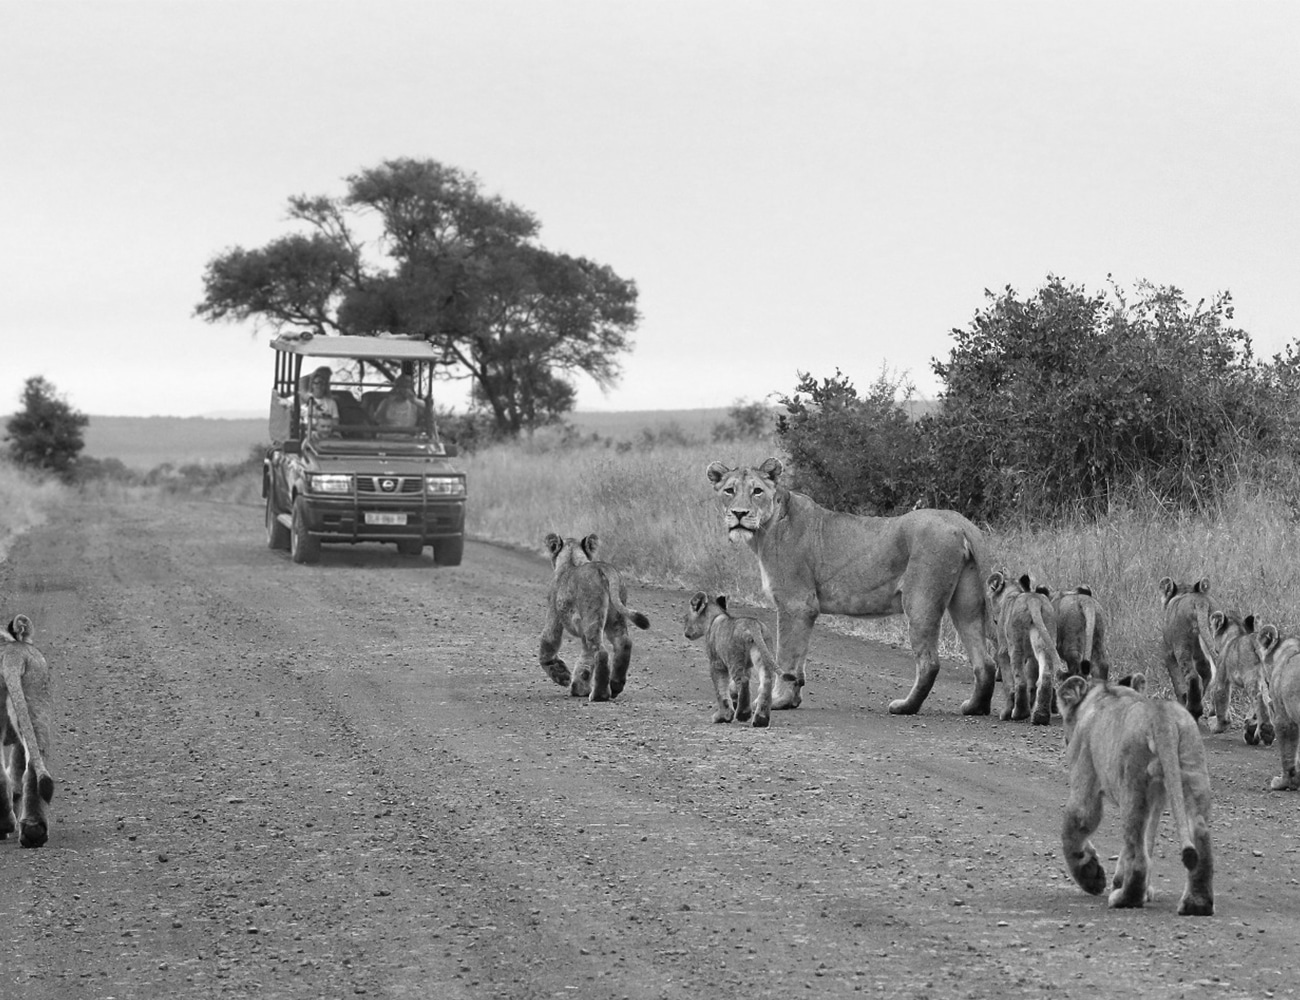 Lions at Kruger National Park South Africa